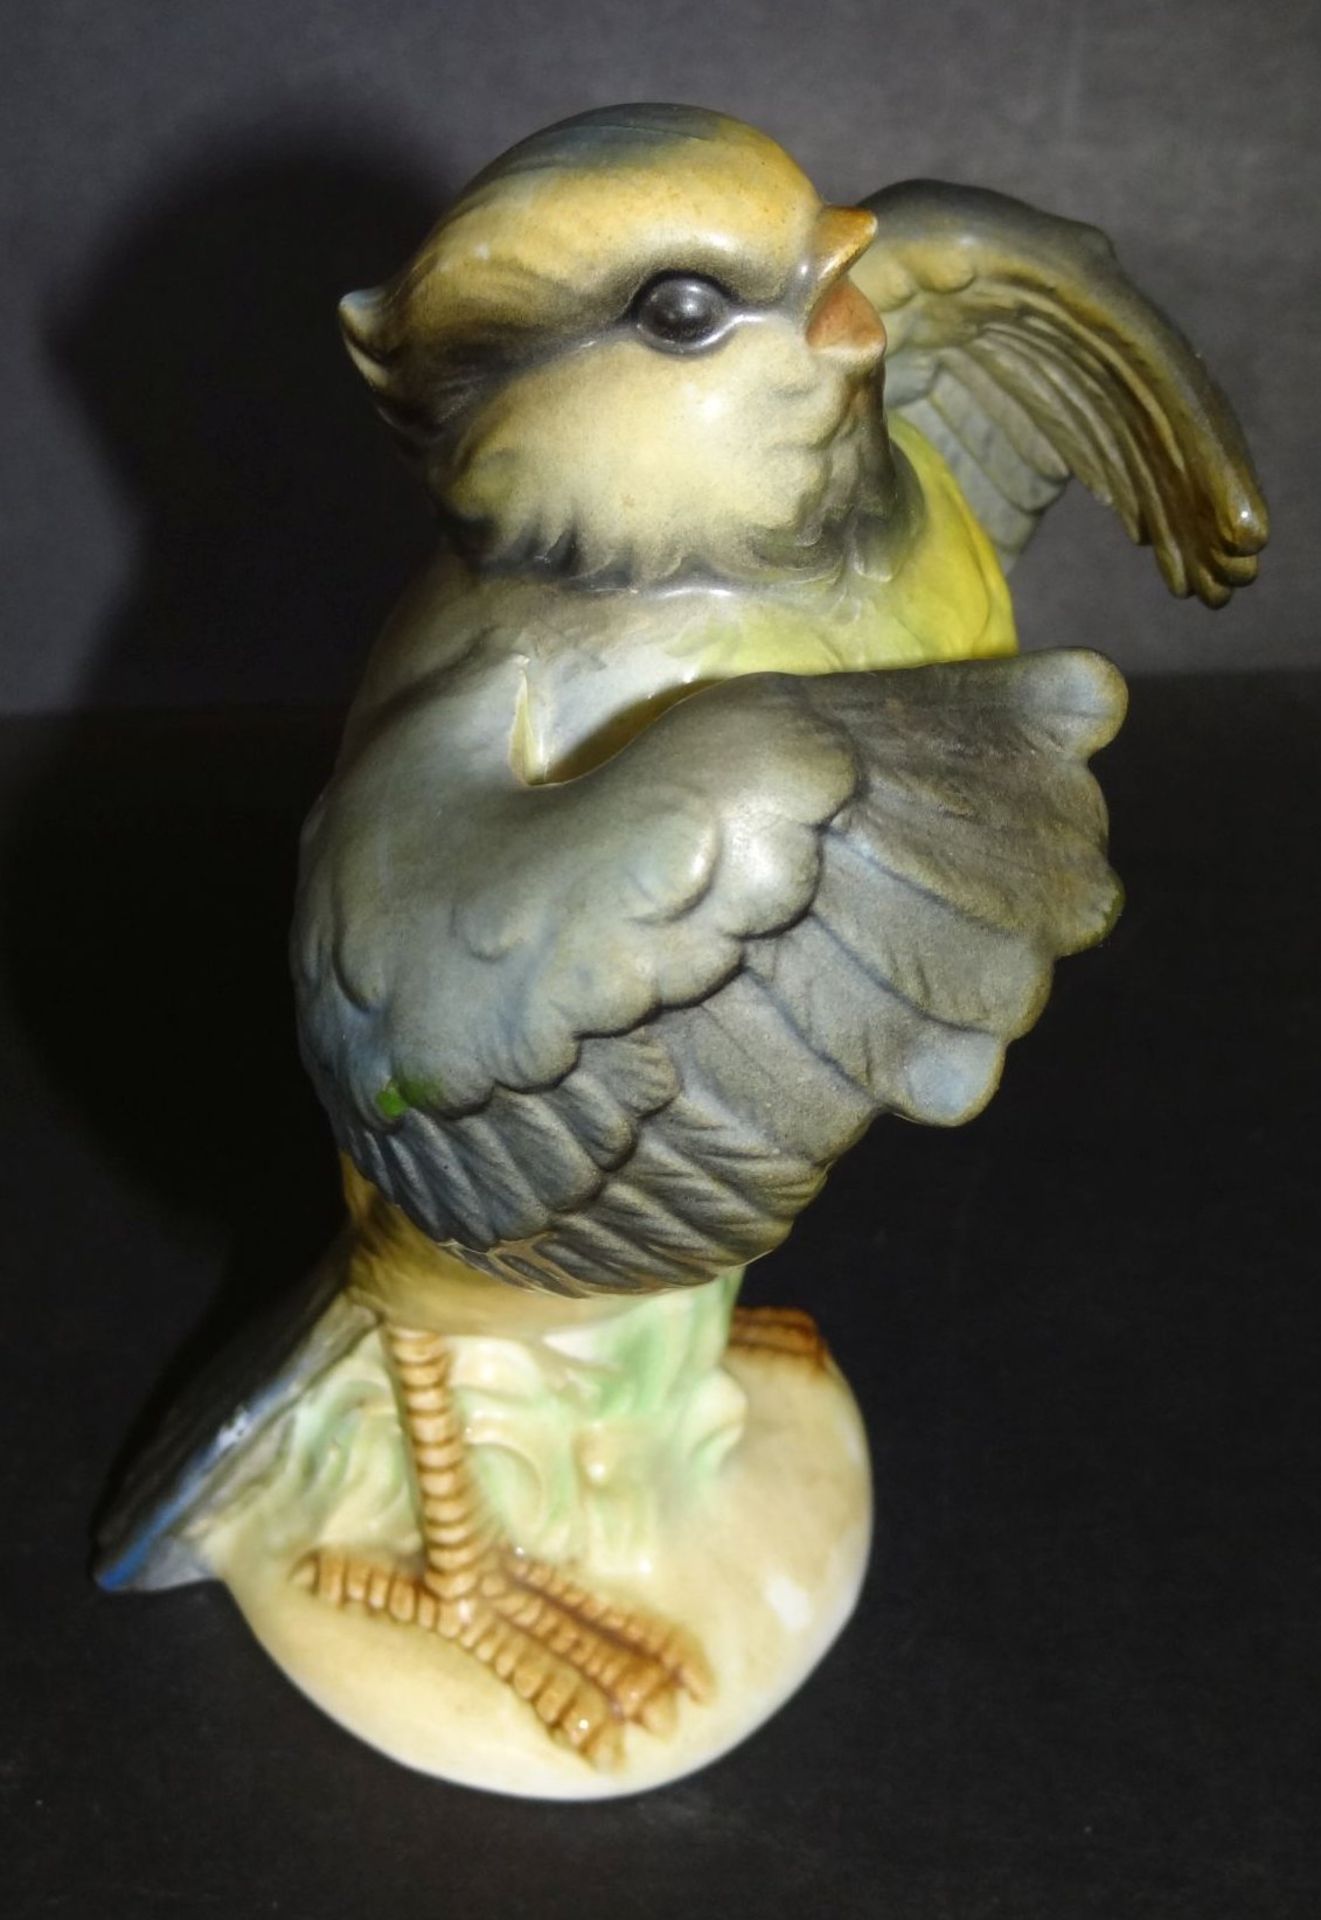 aufplusternder Vogel "Goebel", älter, bemalt, H-12,5 cm, anbei Kanarienvogel mit Hunges "Goebel" - Bild 3 aus 10